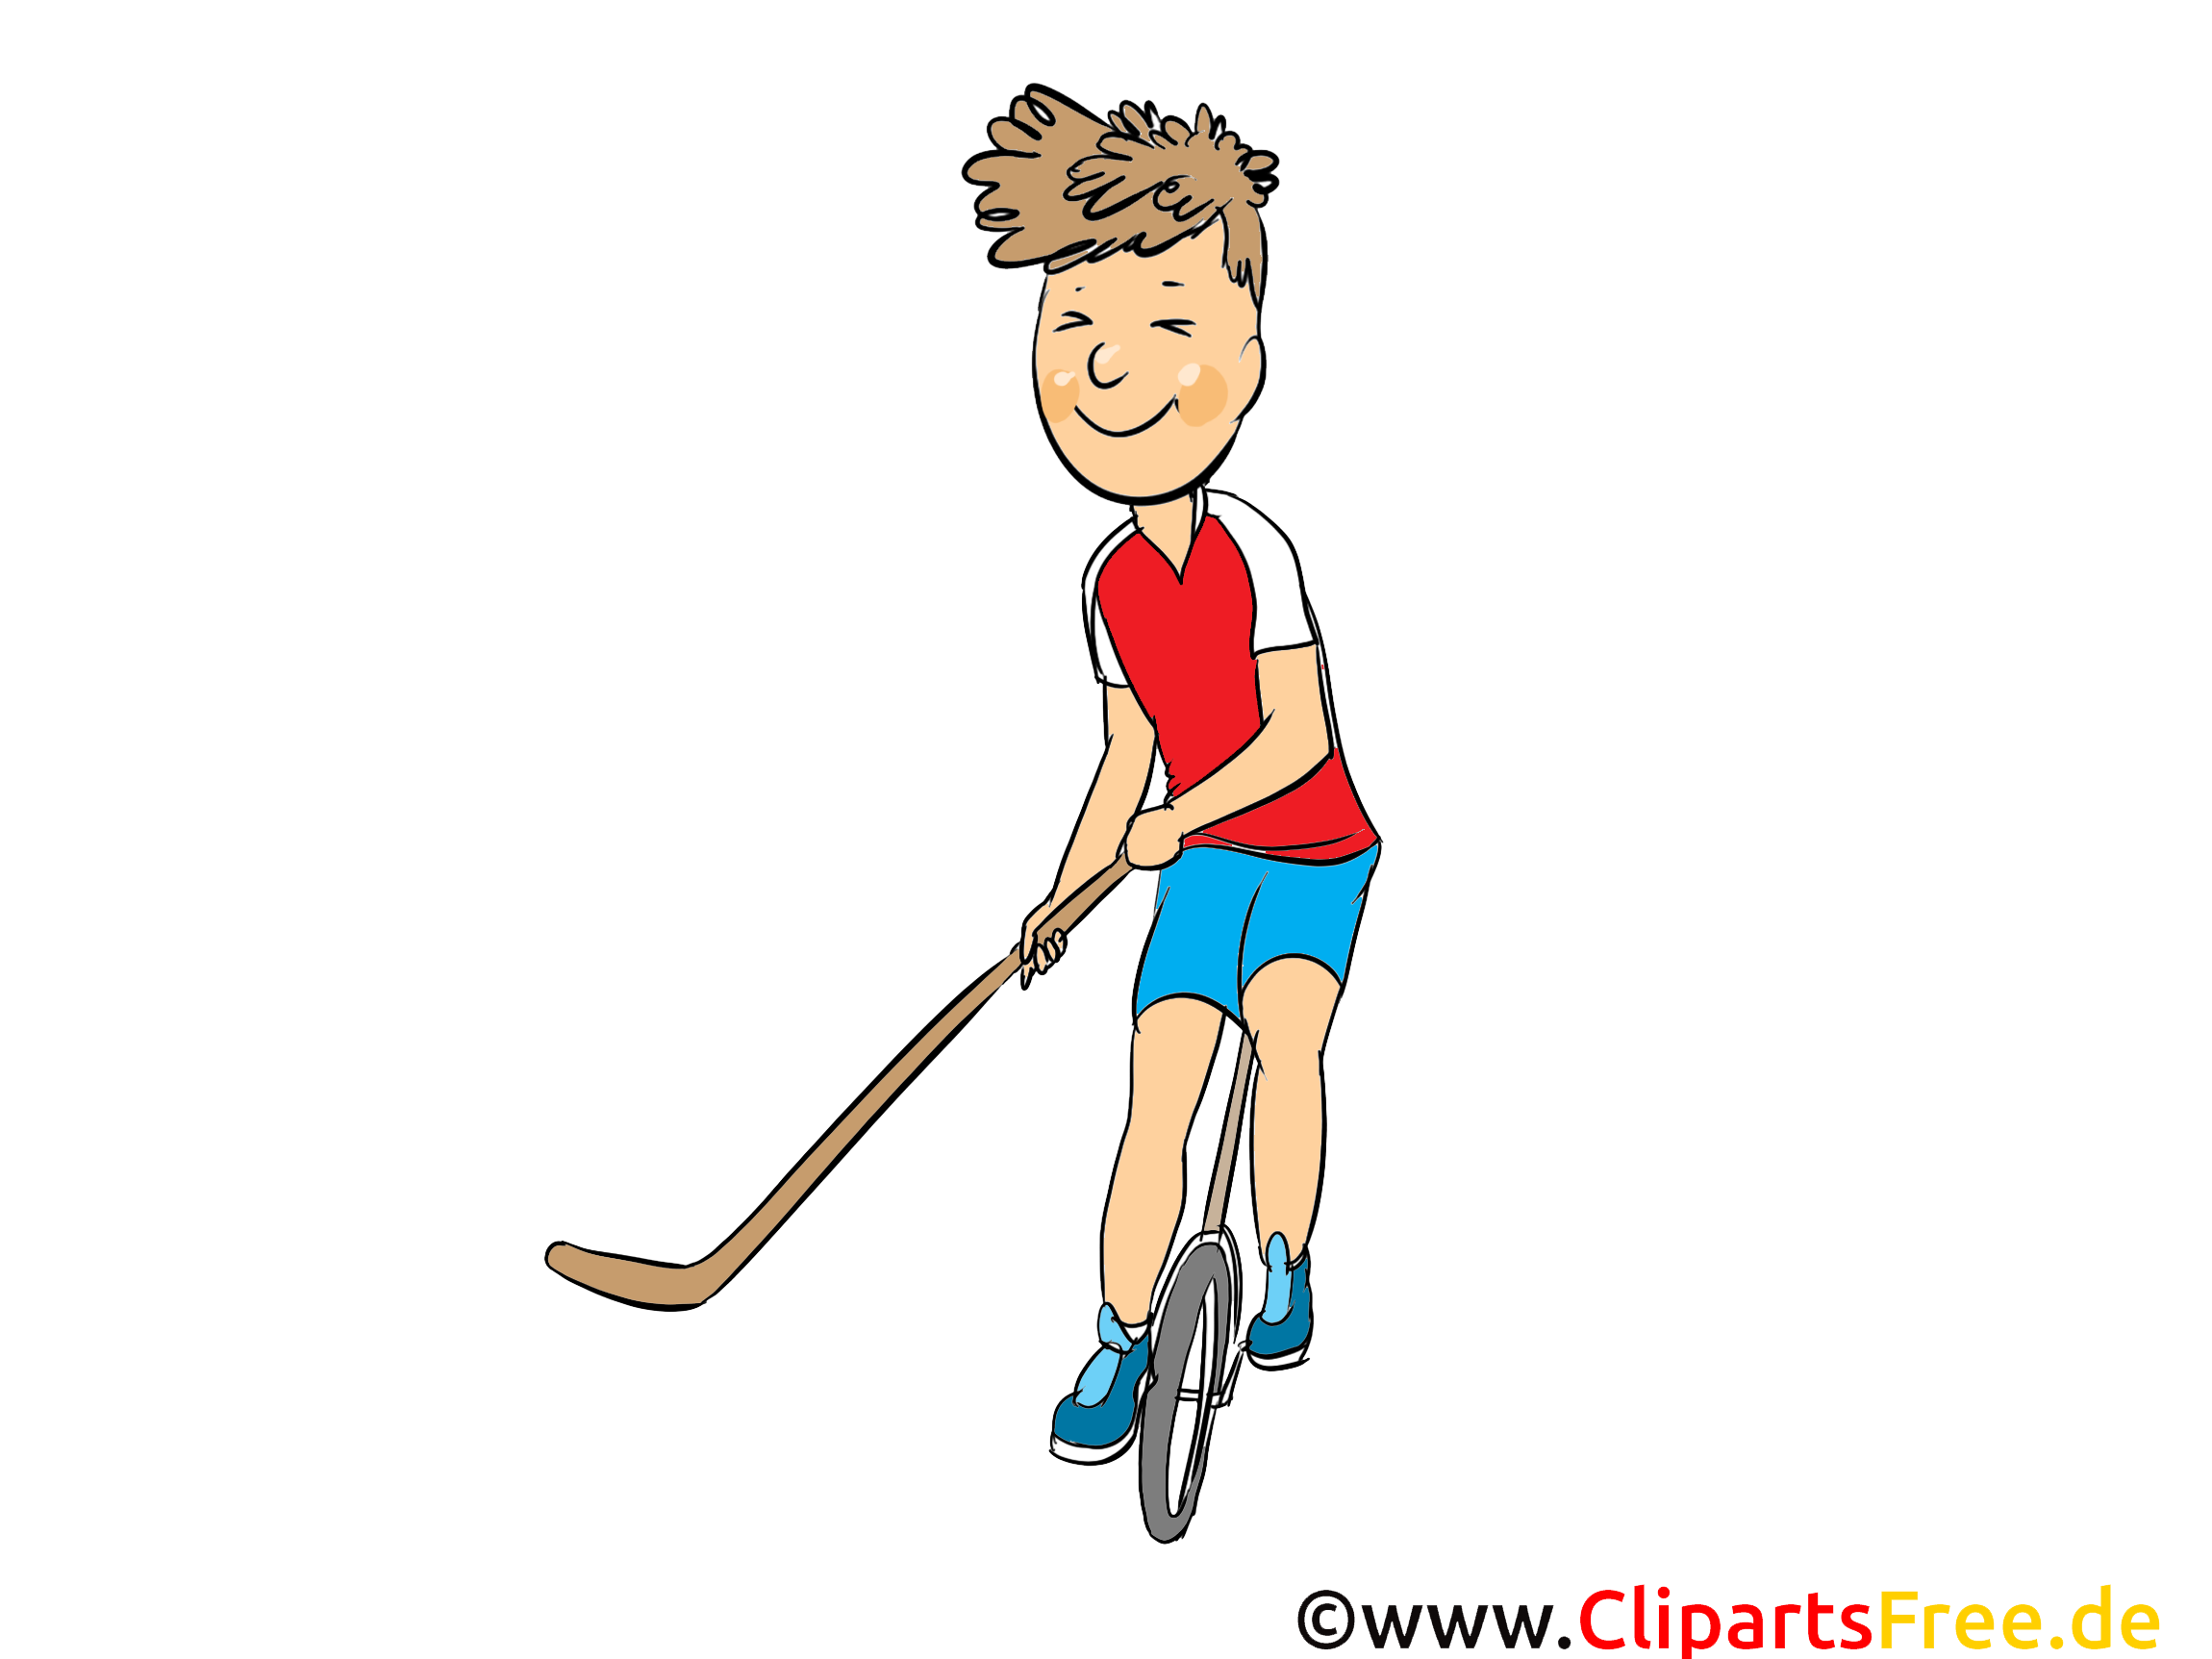 Hockey de rue image gratuite cliparts